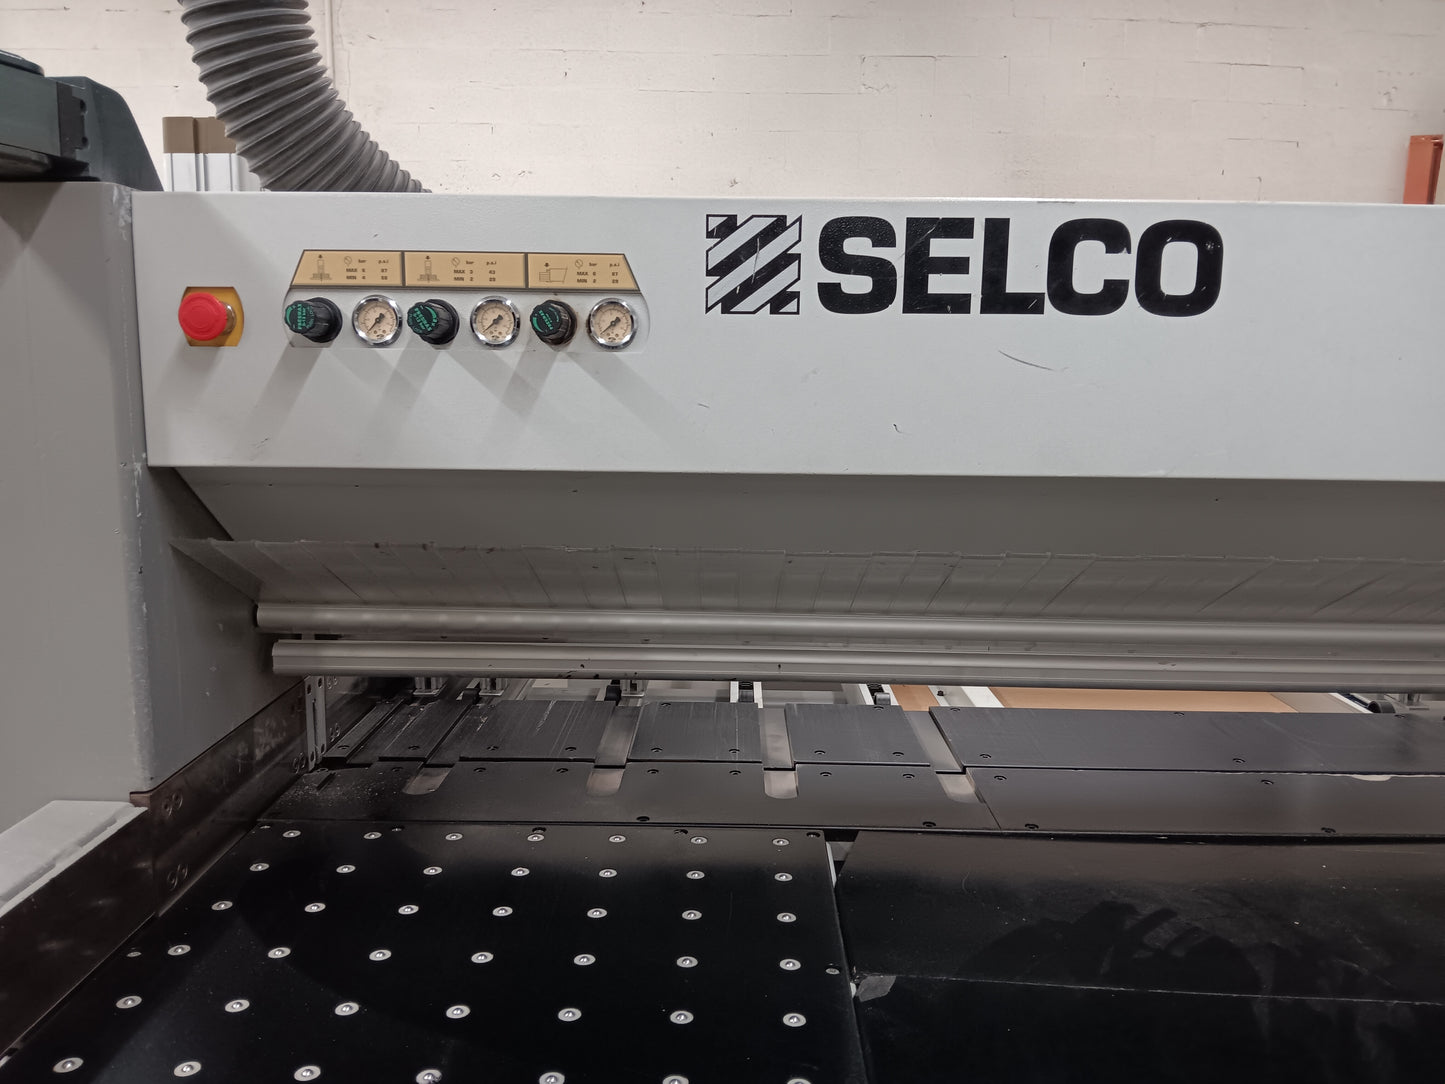 2012 Biesse Selco Sektor 450 Panel Saw - Florida